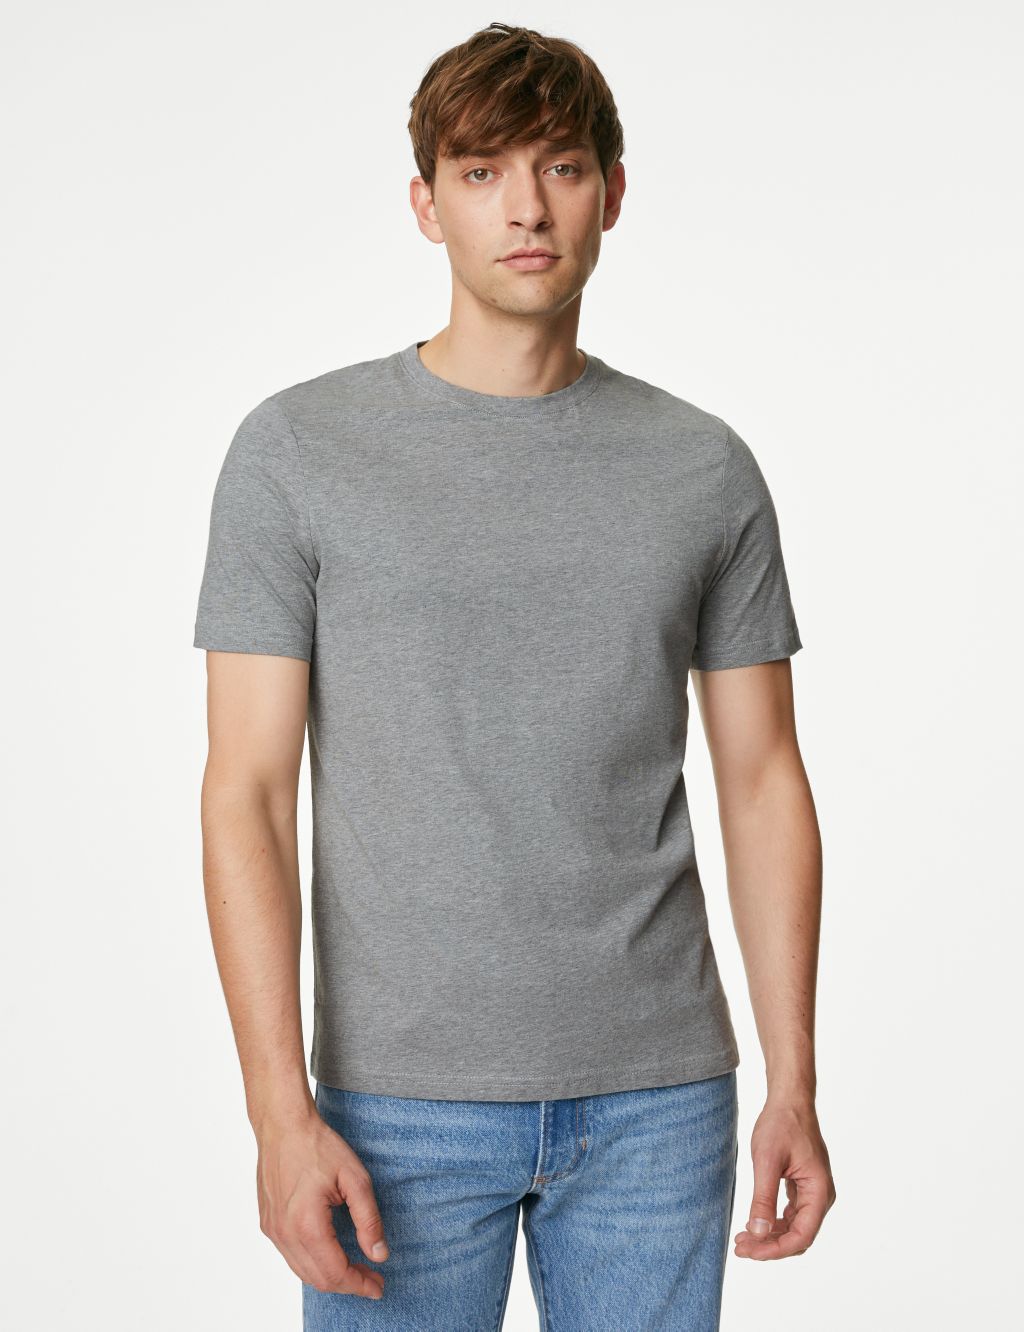 Pure Cotton Crew Neck T-Shirt image 3